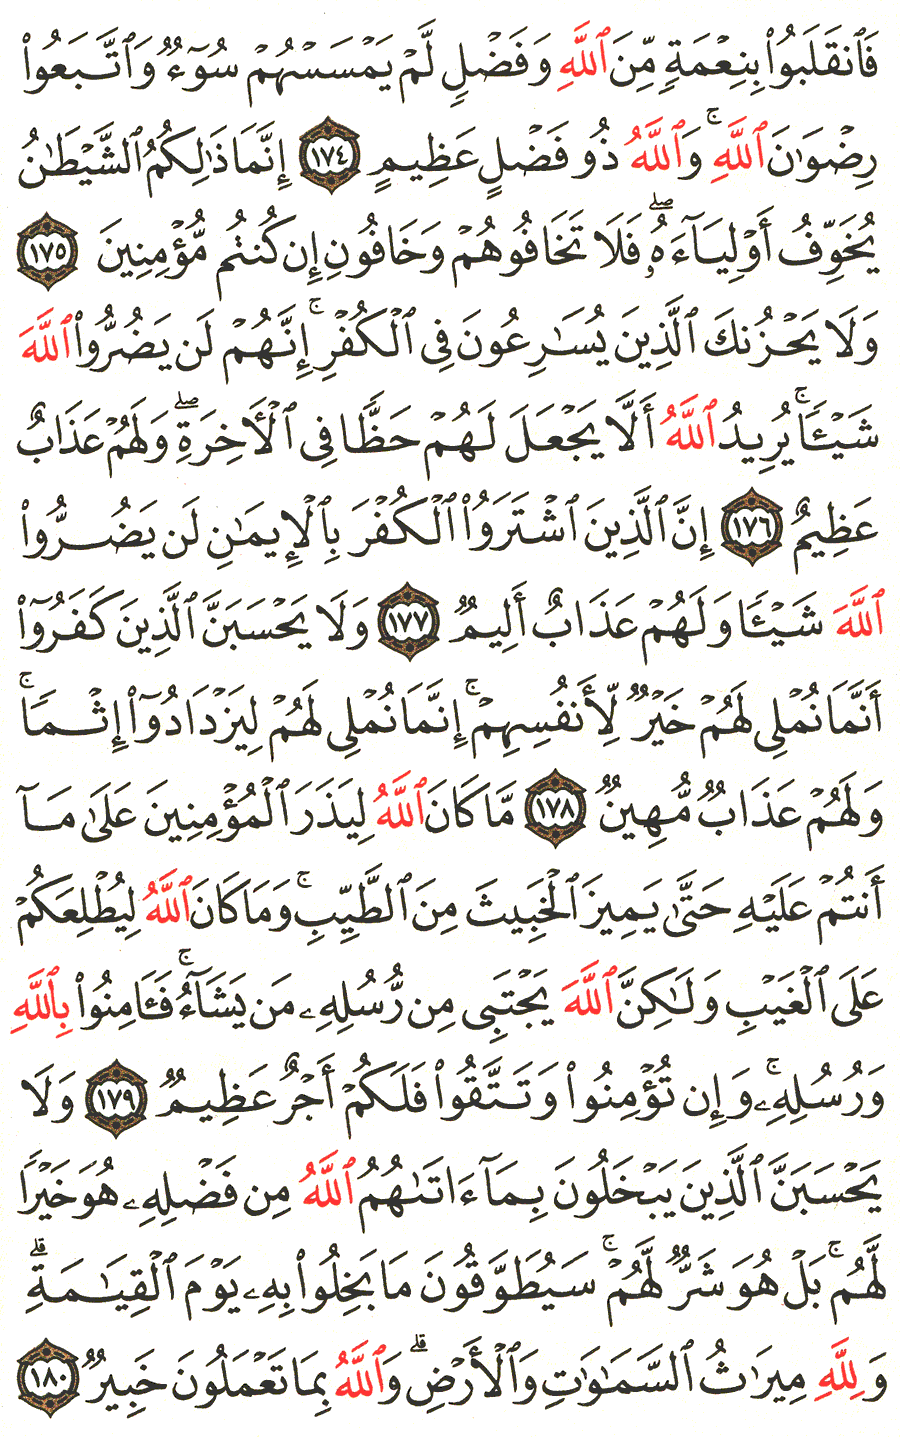 الصفحة رقم 73 من القرآن الكريم مكتوبة من المصحف